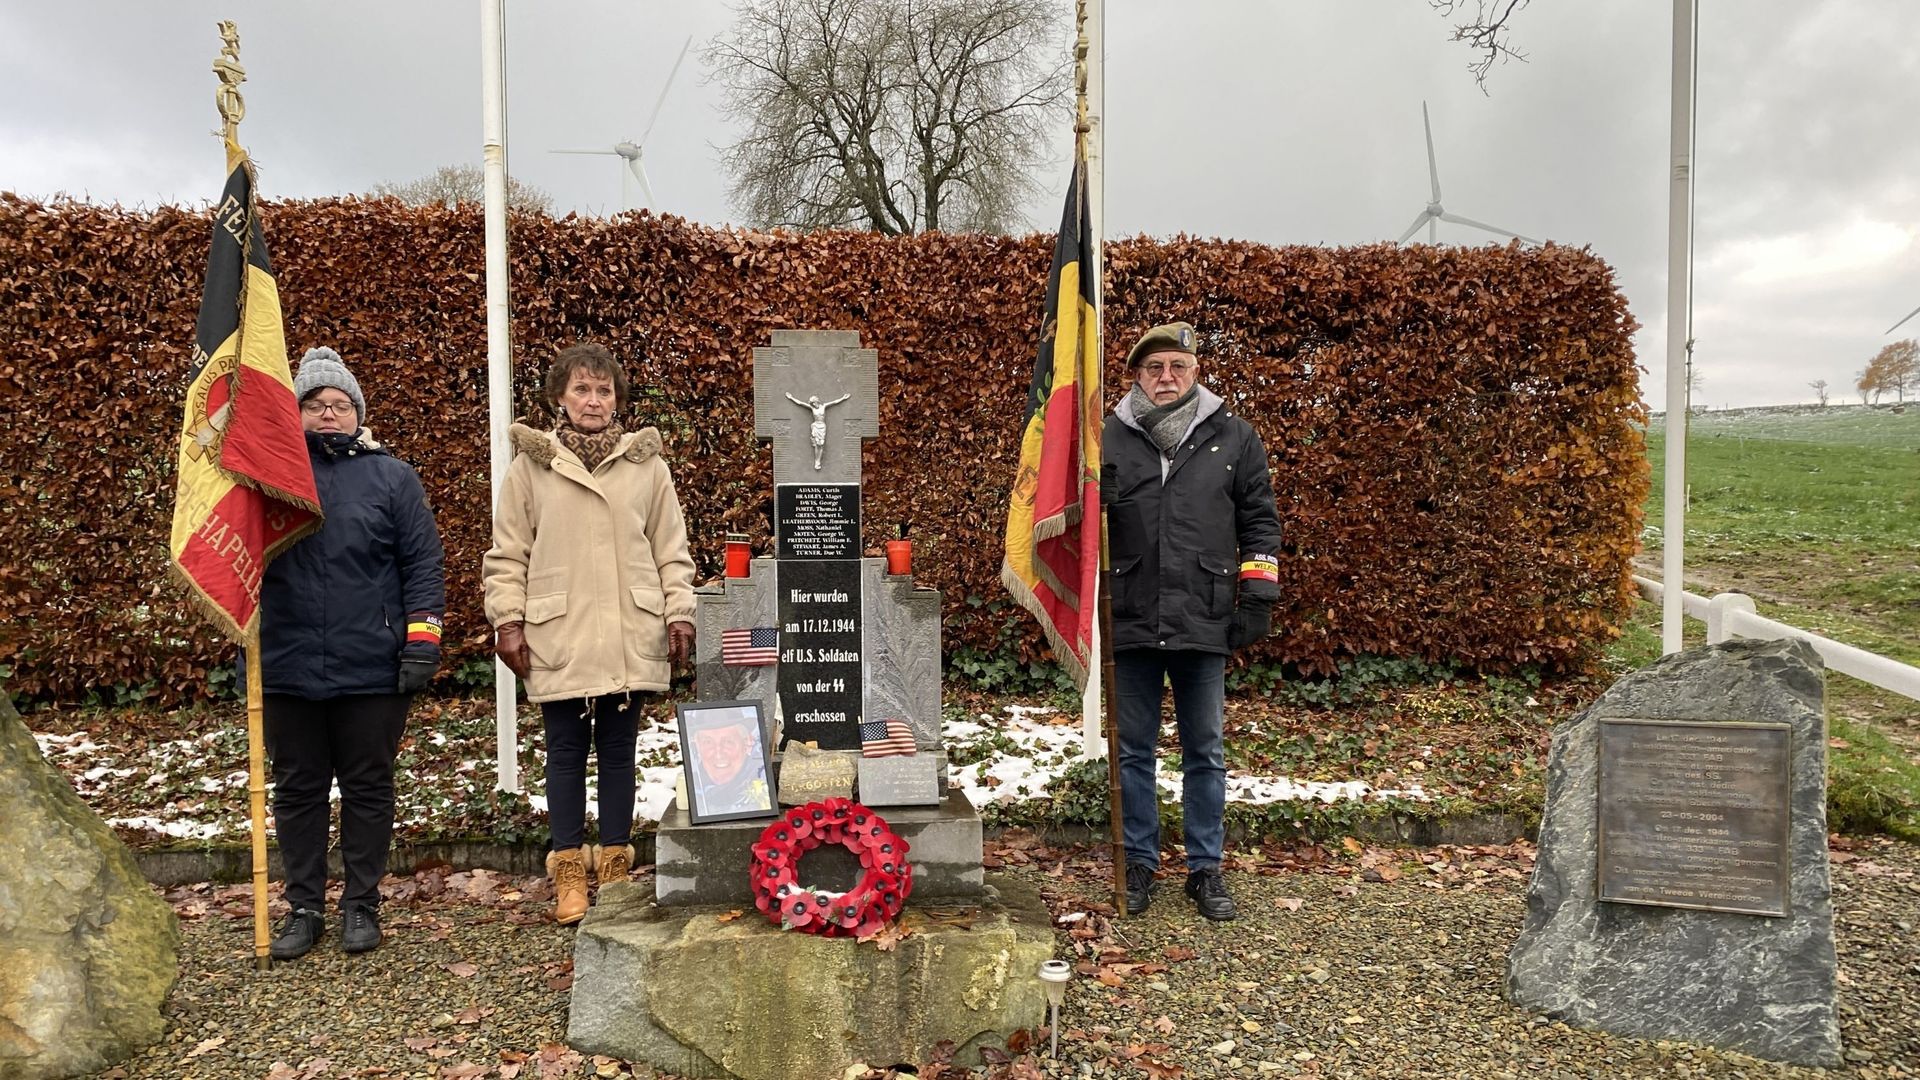 Le mémorial a été érigé par Hermann Langer, fils de la famille ayant accueilli les 11 soldats massacrés à Wereth.